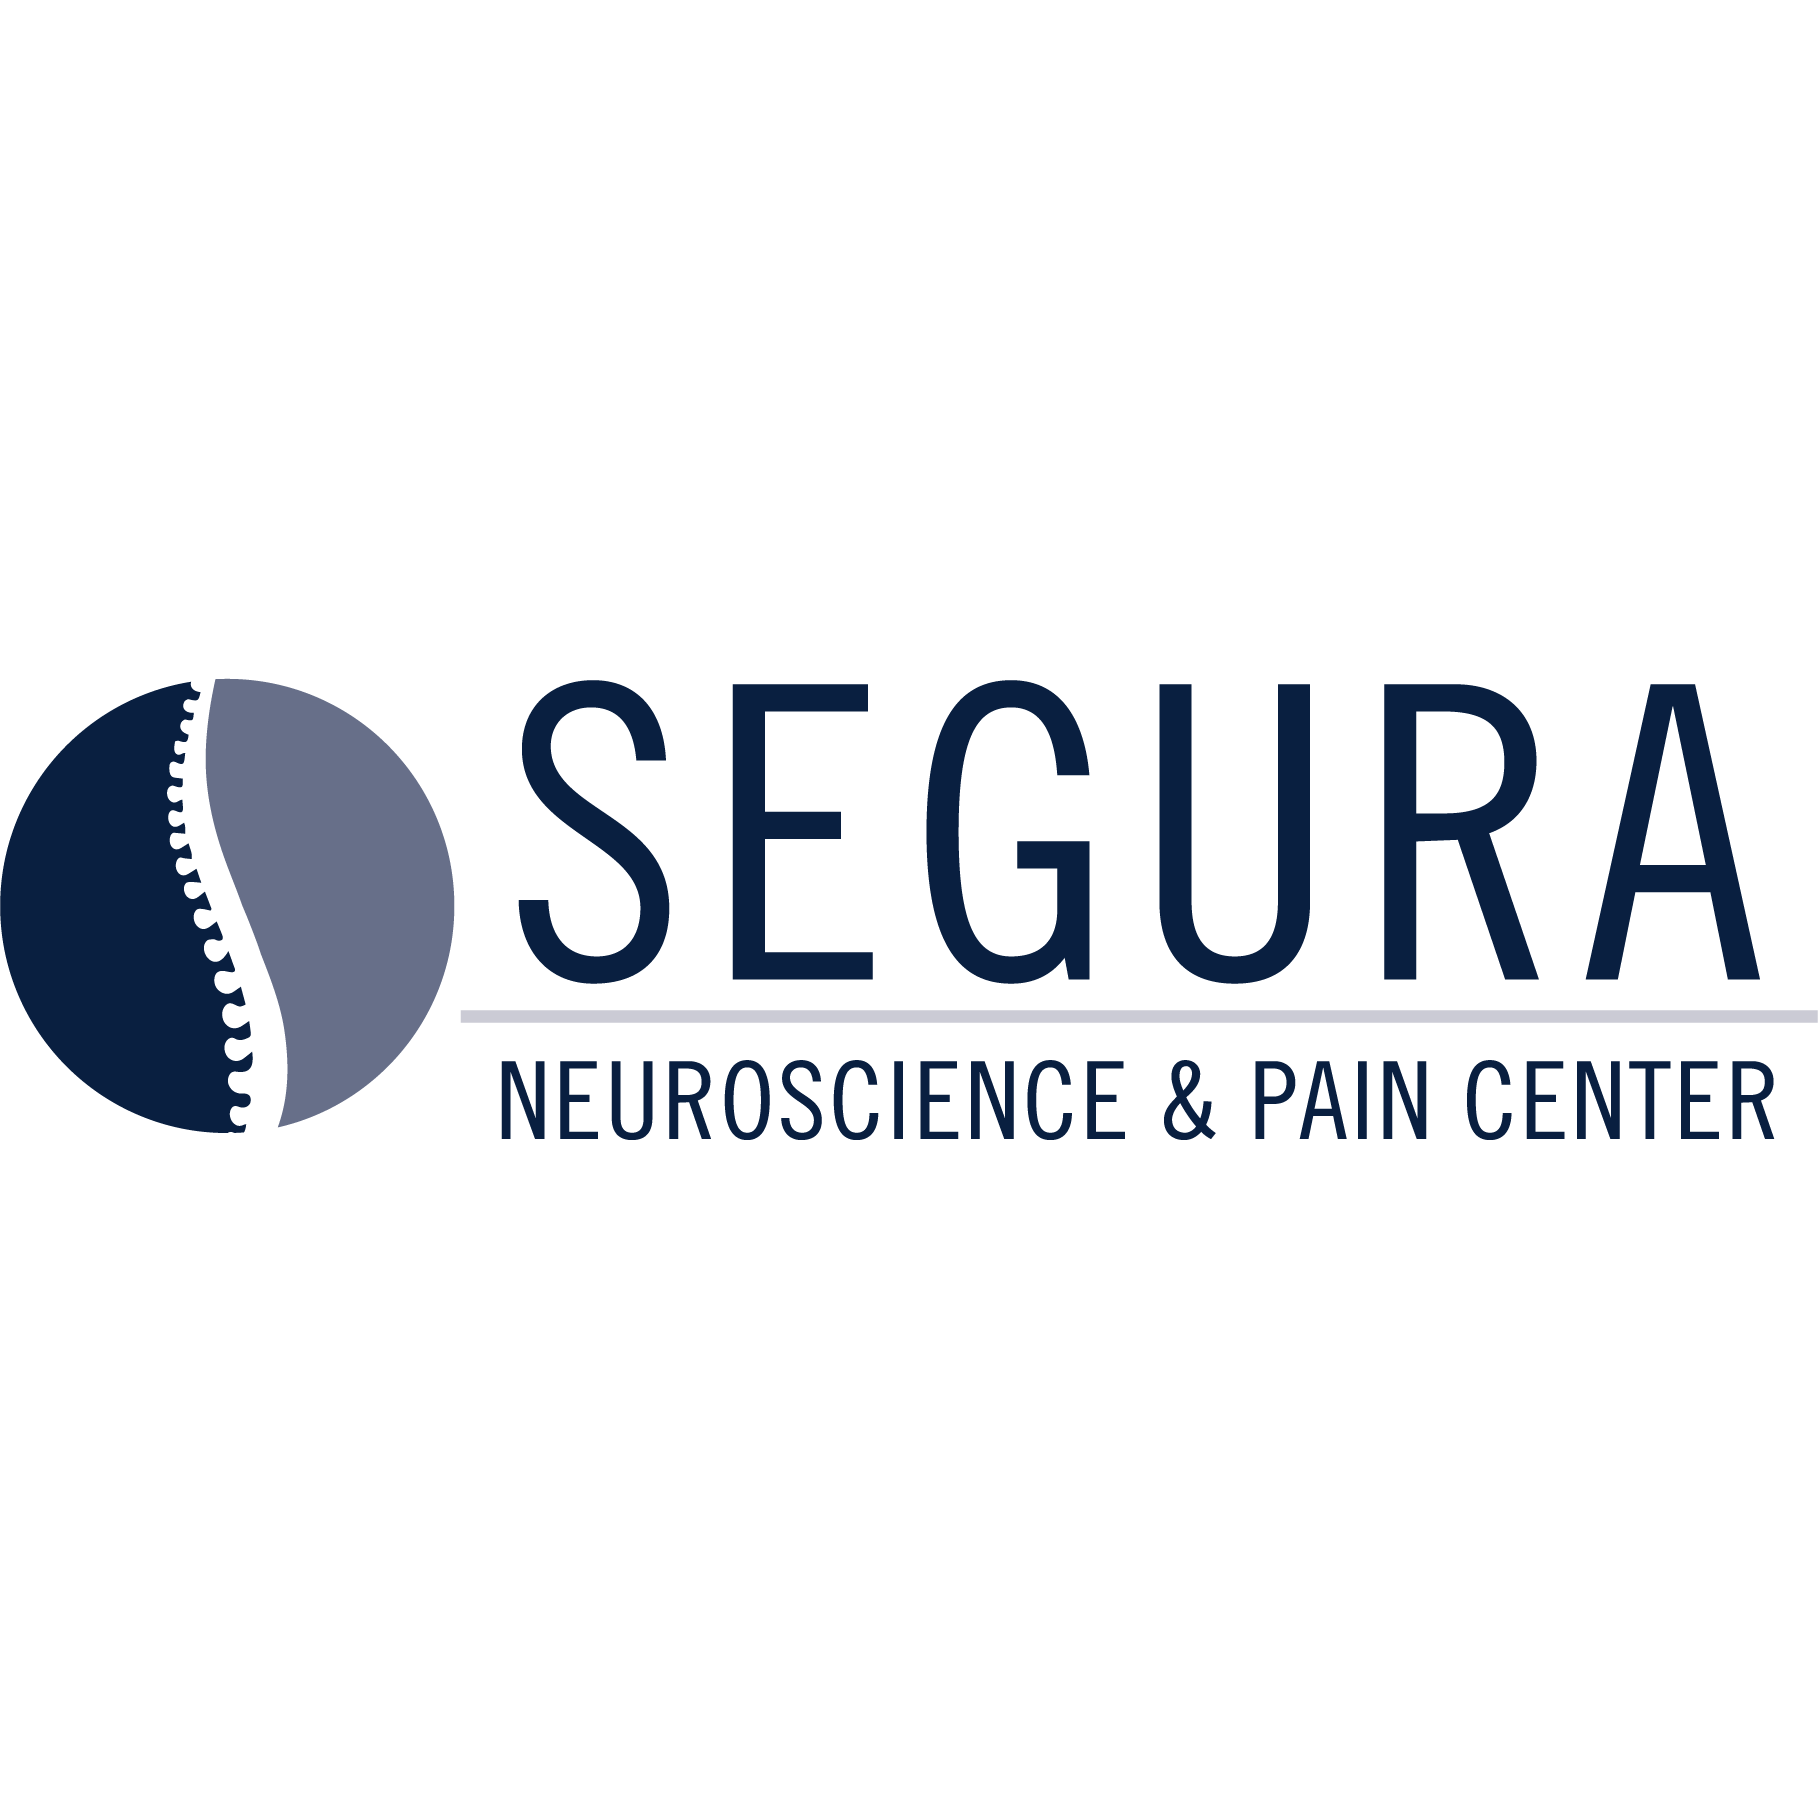 Segura Neuroscience & Pain Center Logo